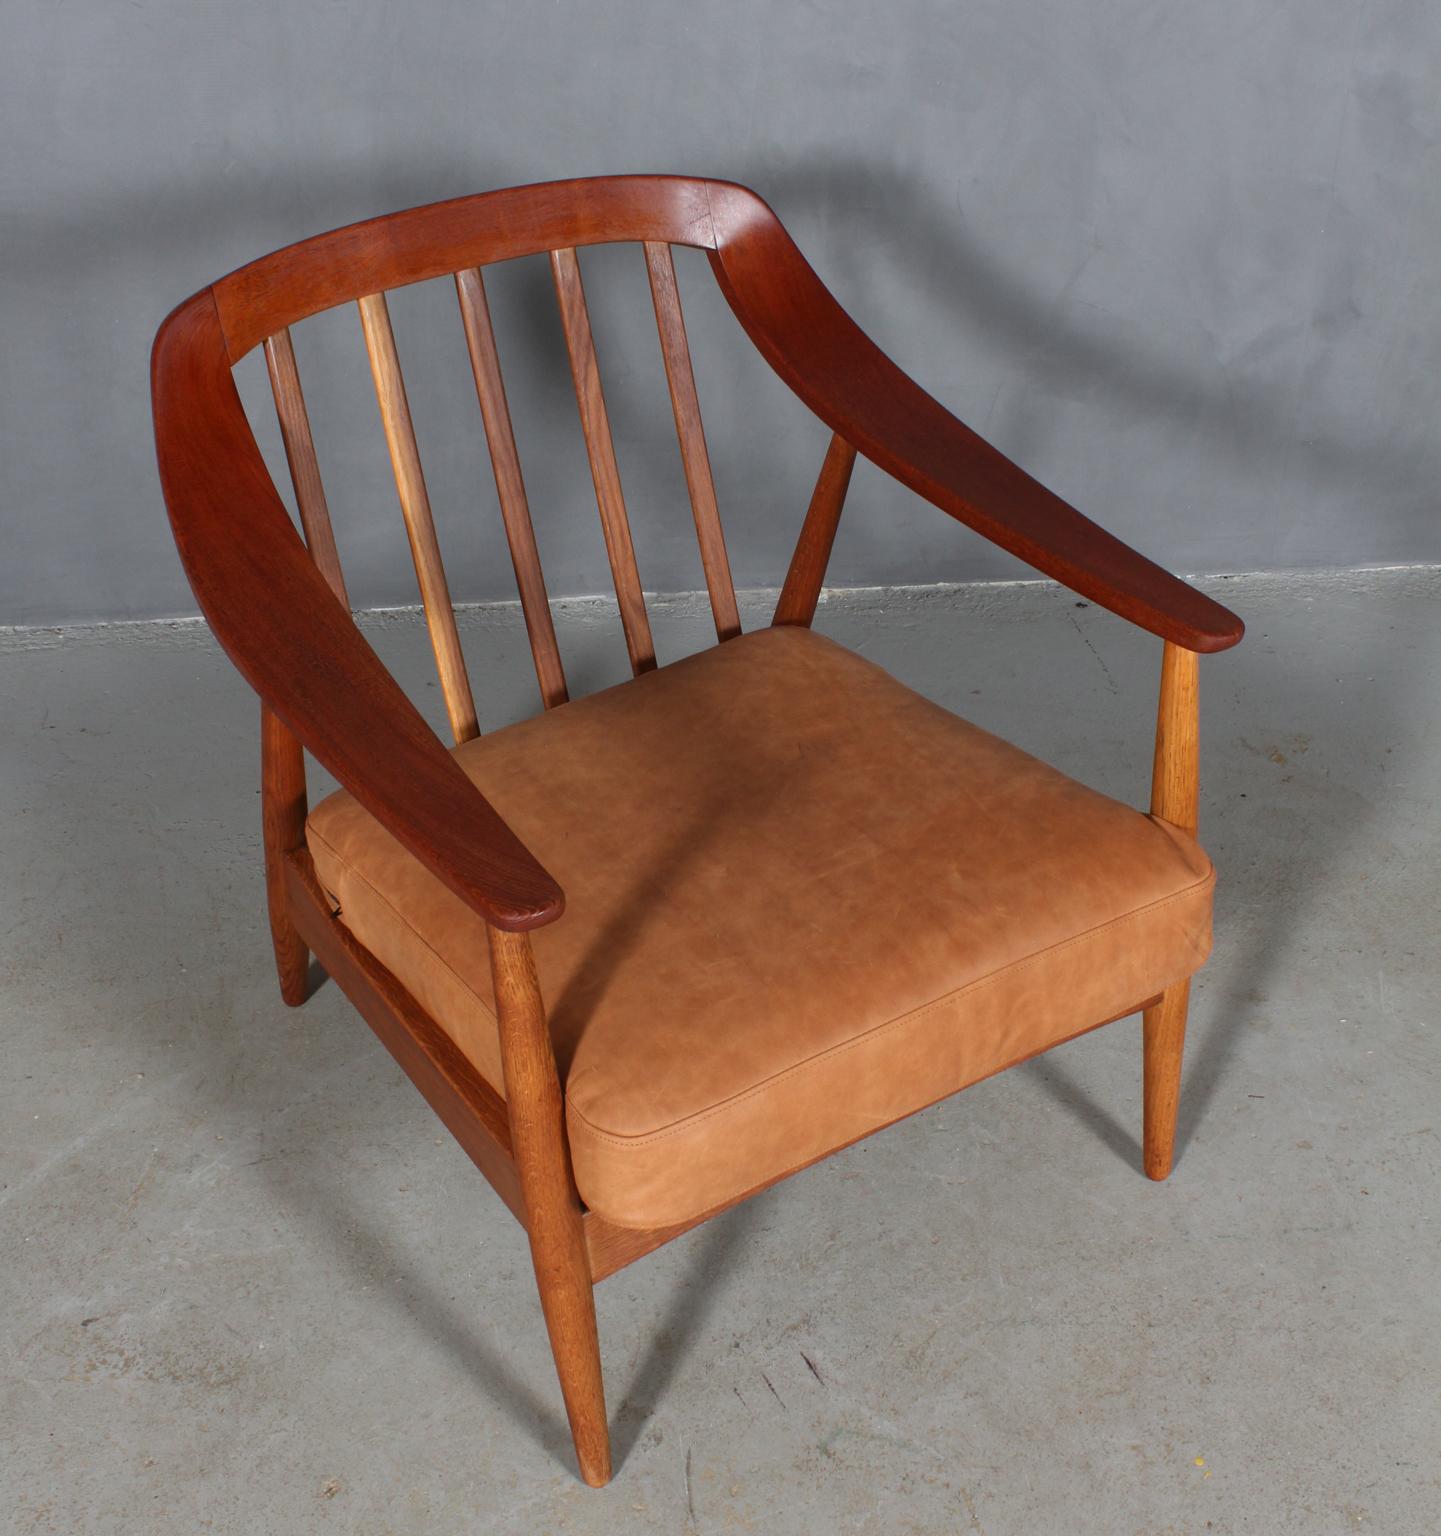 Illum Wikkelsø lounge chair in teak and oak.

New upholstered cushion in tan Dunes anilin leather from Arne Sørensen.

Made by Søren Willadsen.